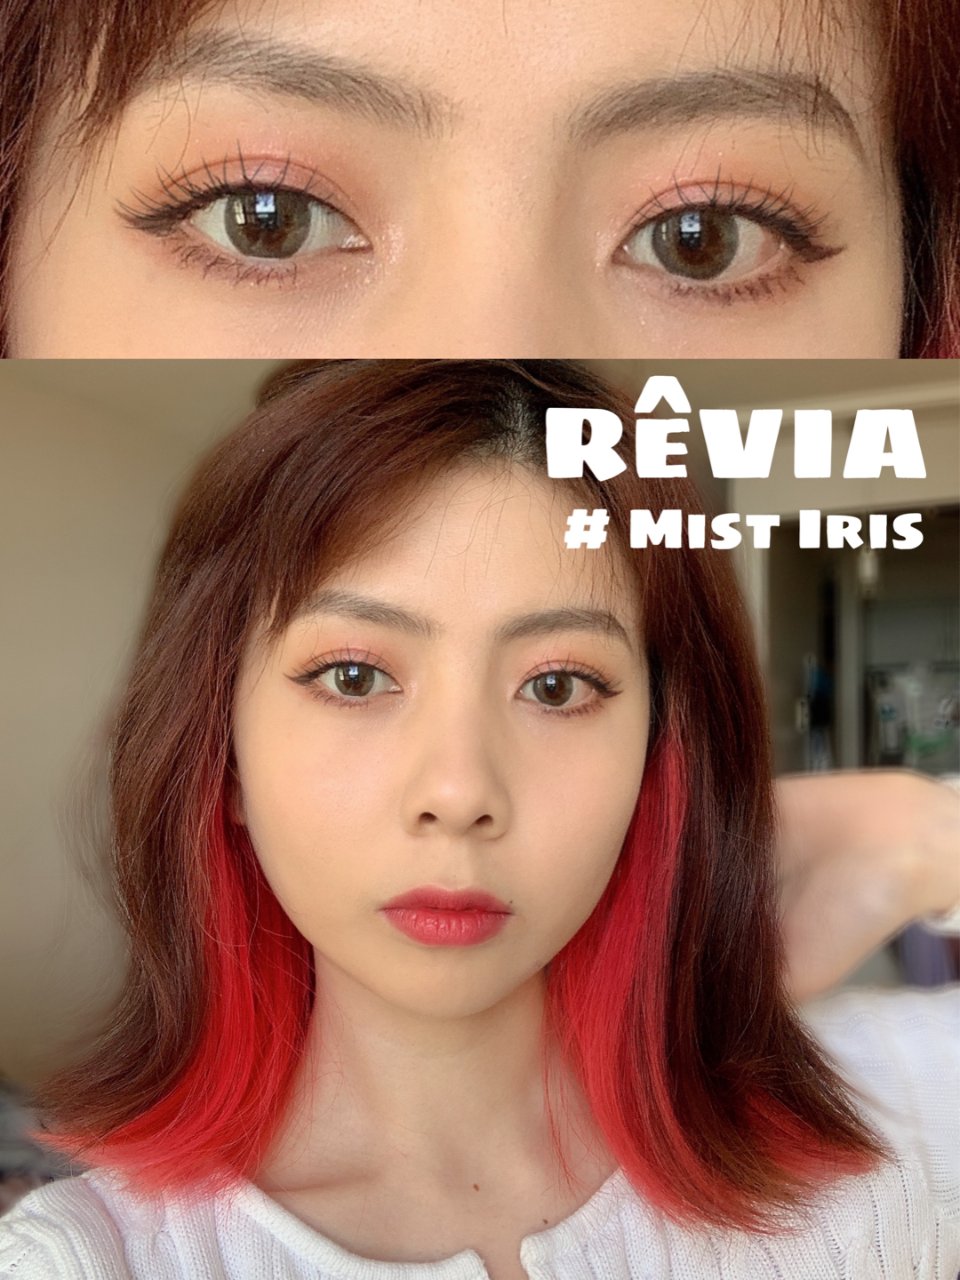 Revia,[Contact lenses] ReVIA1day Color [10 lenses / 1Box] / Daily Disposal Colored Contact Lenses - Contact Lens Shop LOOOK